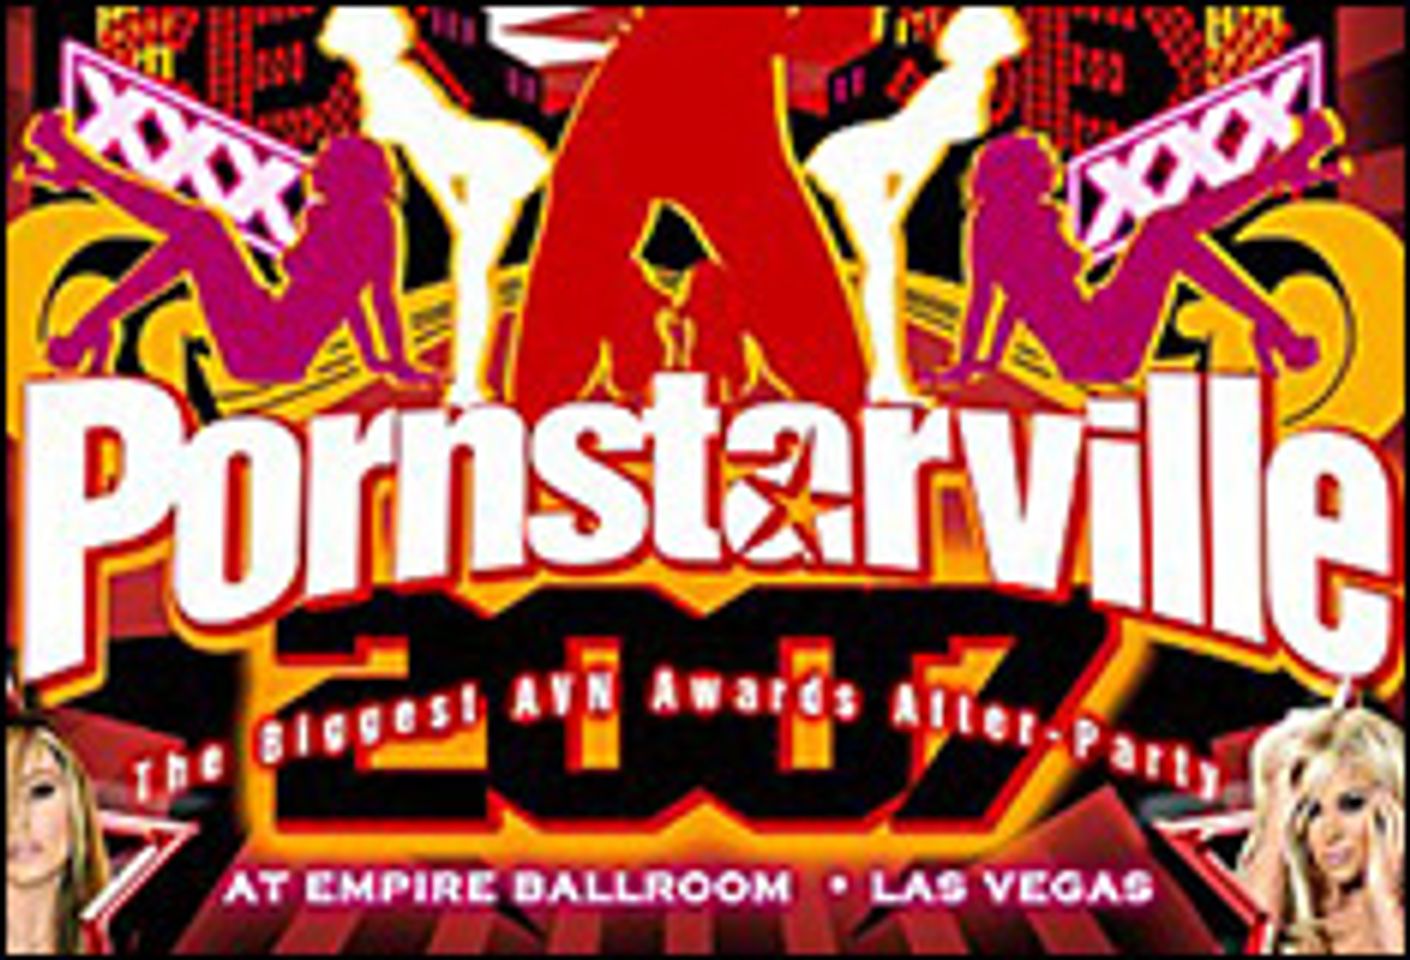 Pornstar.com and MALLcom.com Host PornstarVille After-Party